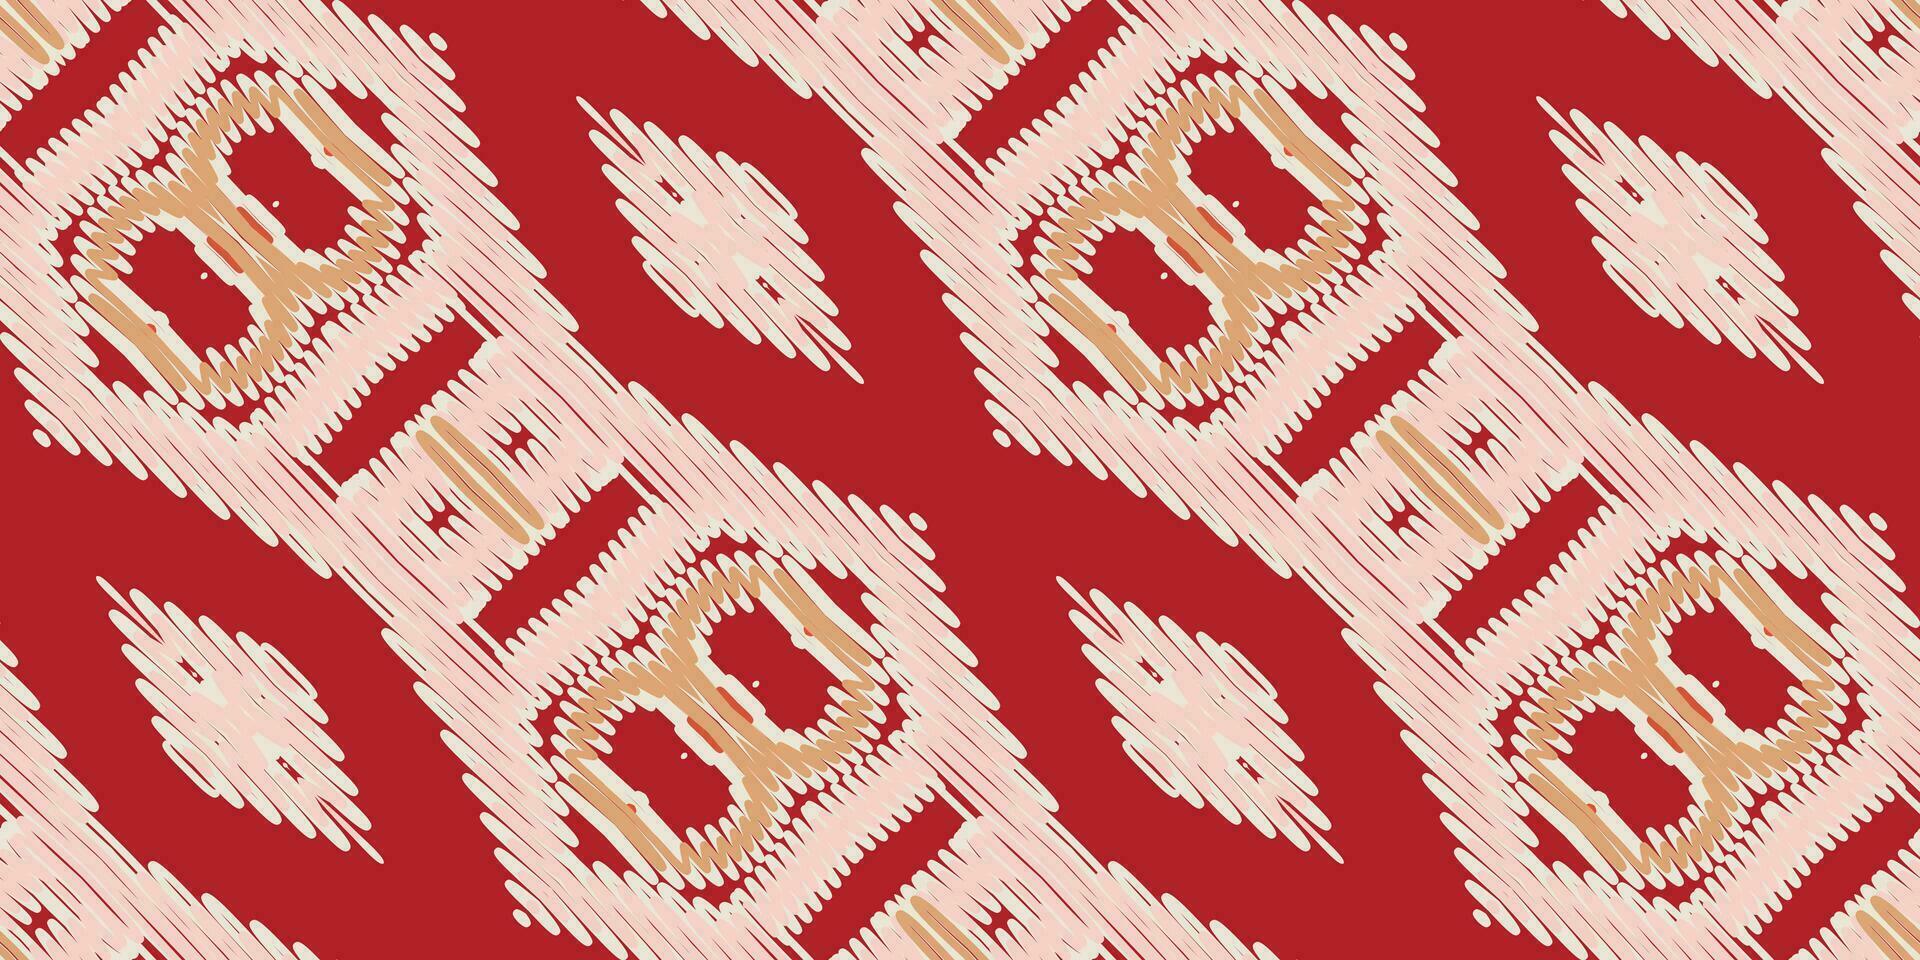 nórdico modelo sin costura pañuelo impresión seda motivo bordado, ikat bordado vector diseño para impresión indonesio batik motivo bordado nativo americano kurta Mughal diseño